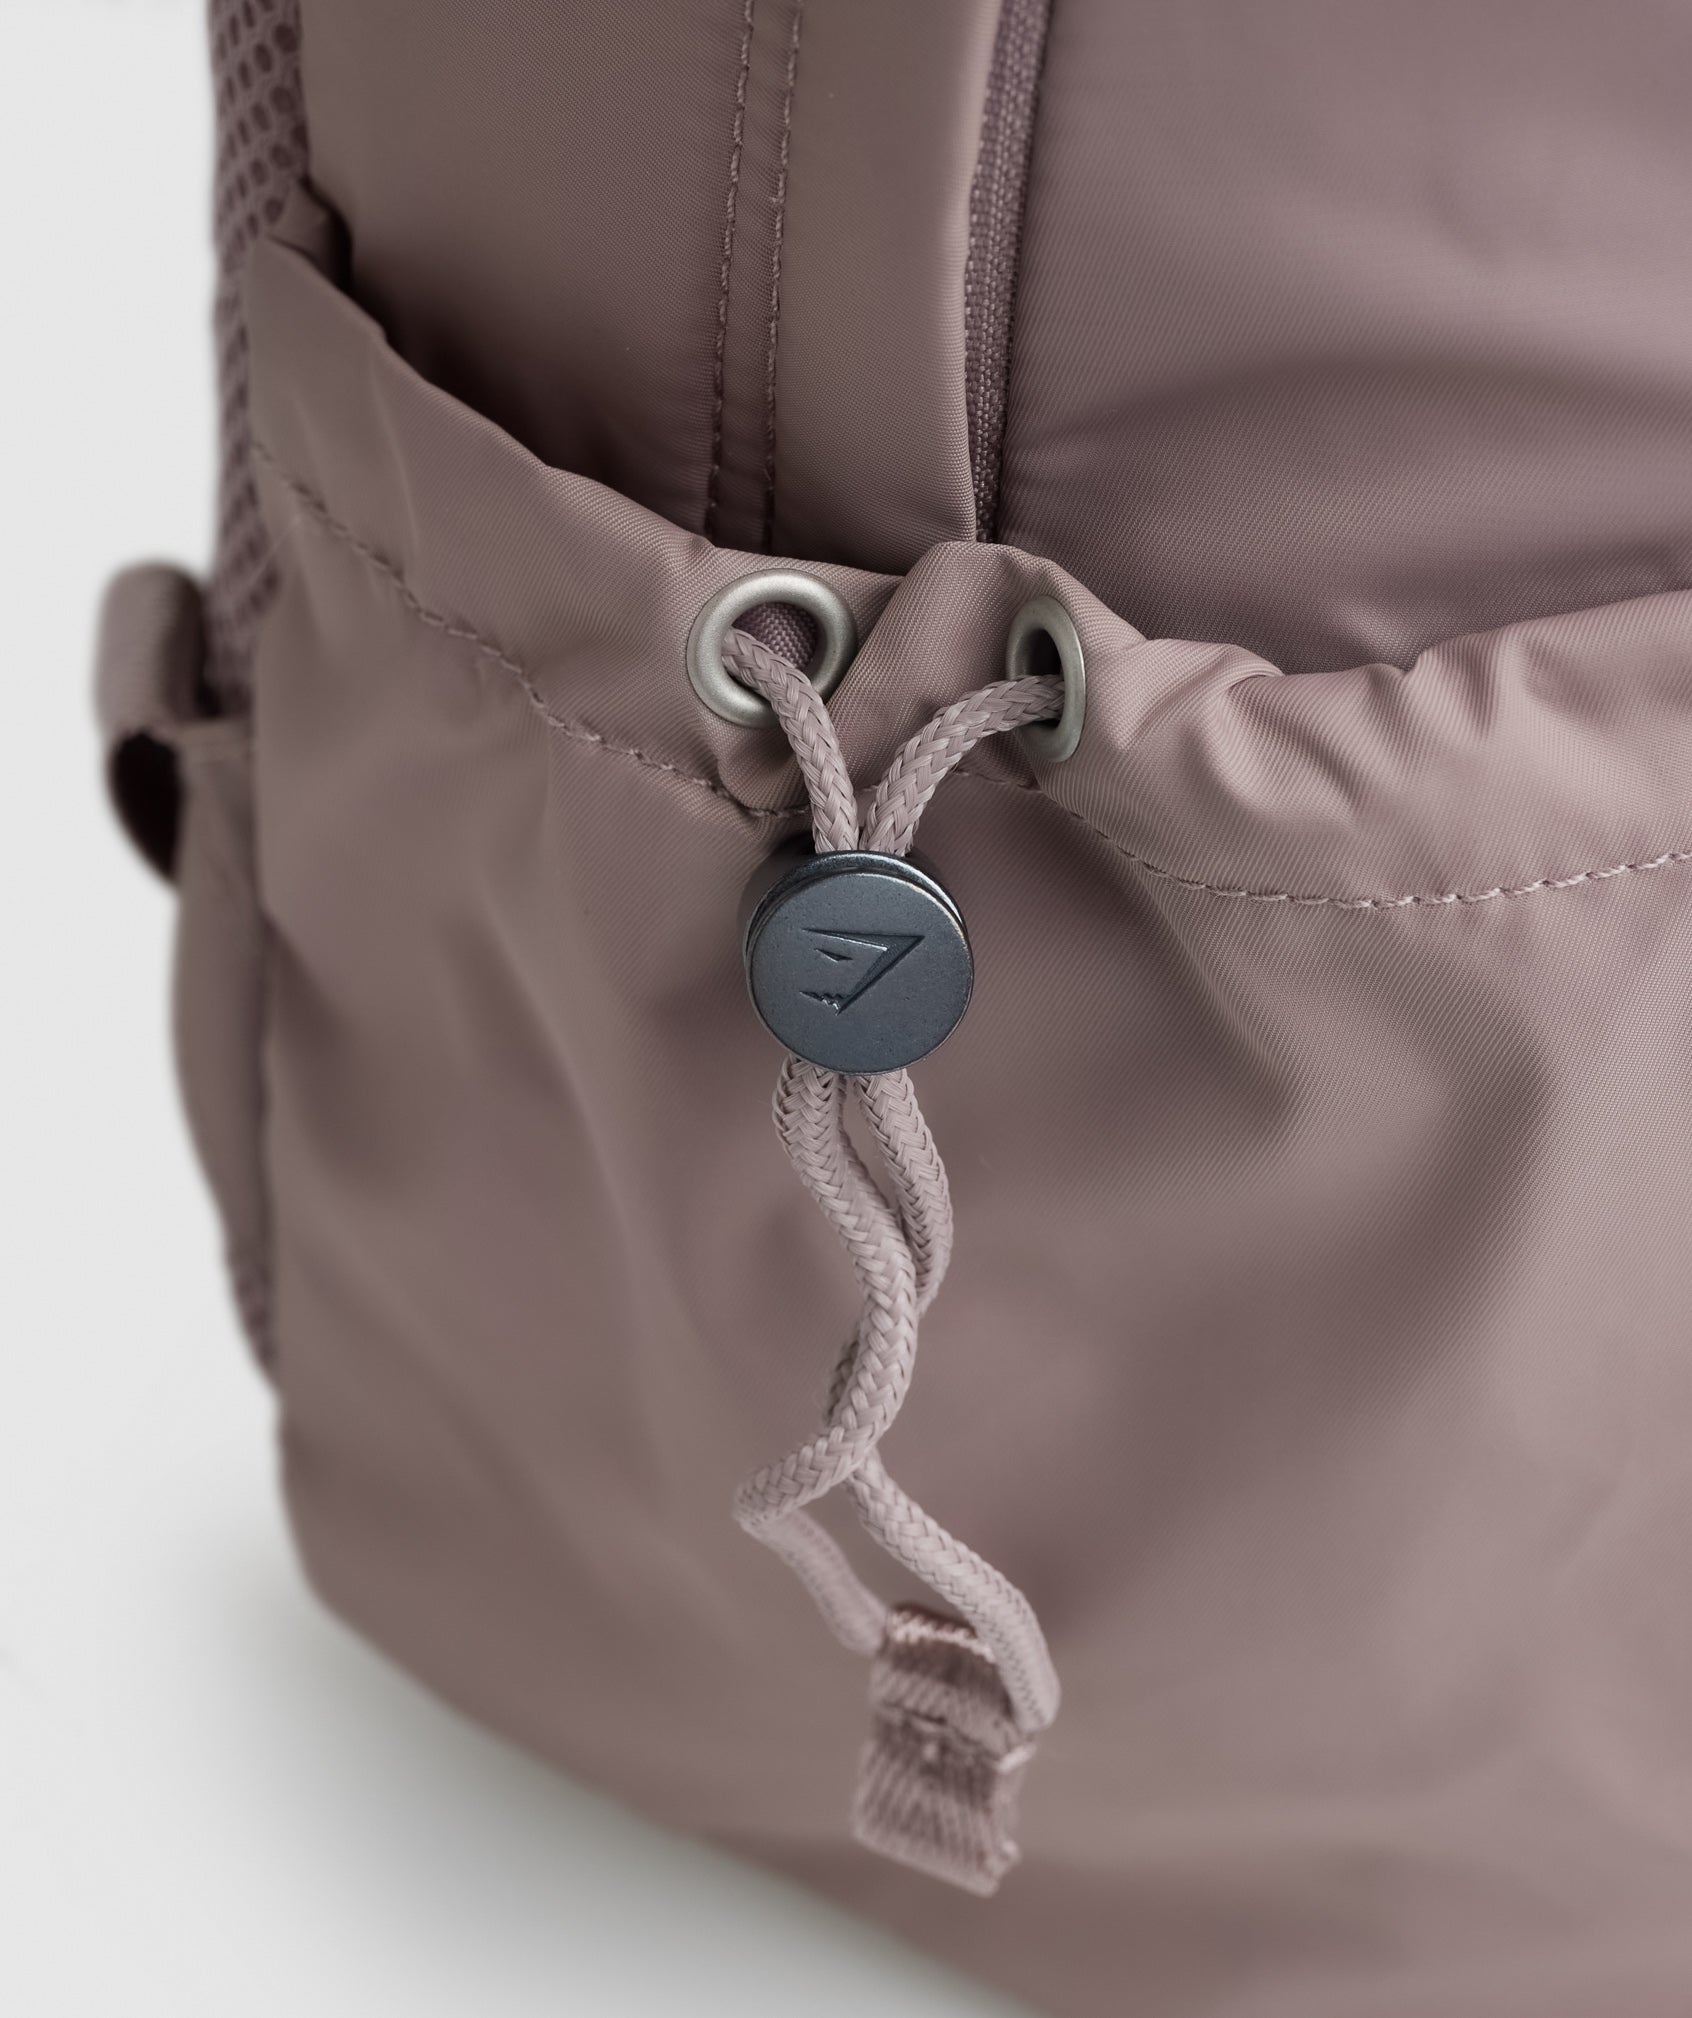 Gymshark Premium Lifestyle Backpack - Washed Mauve